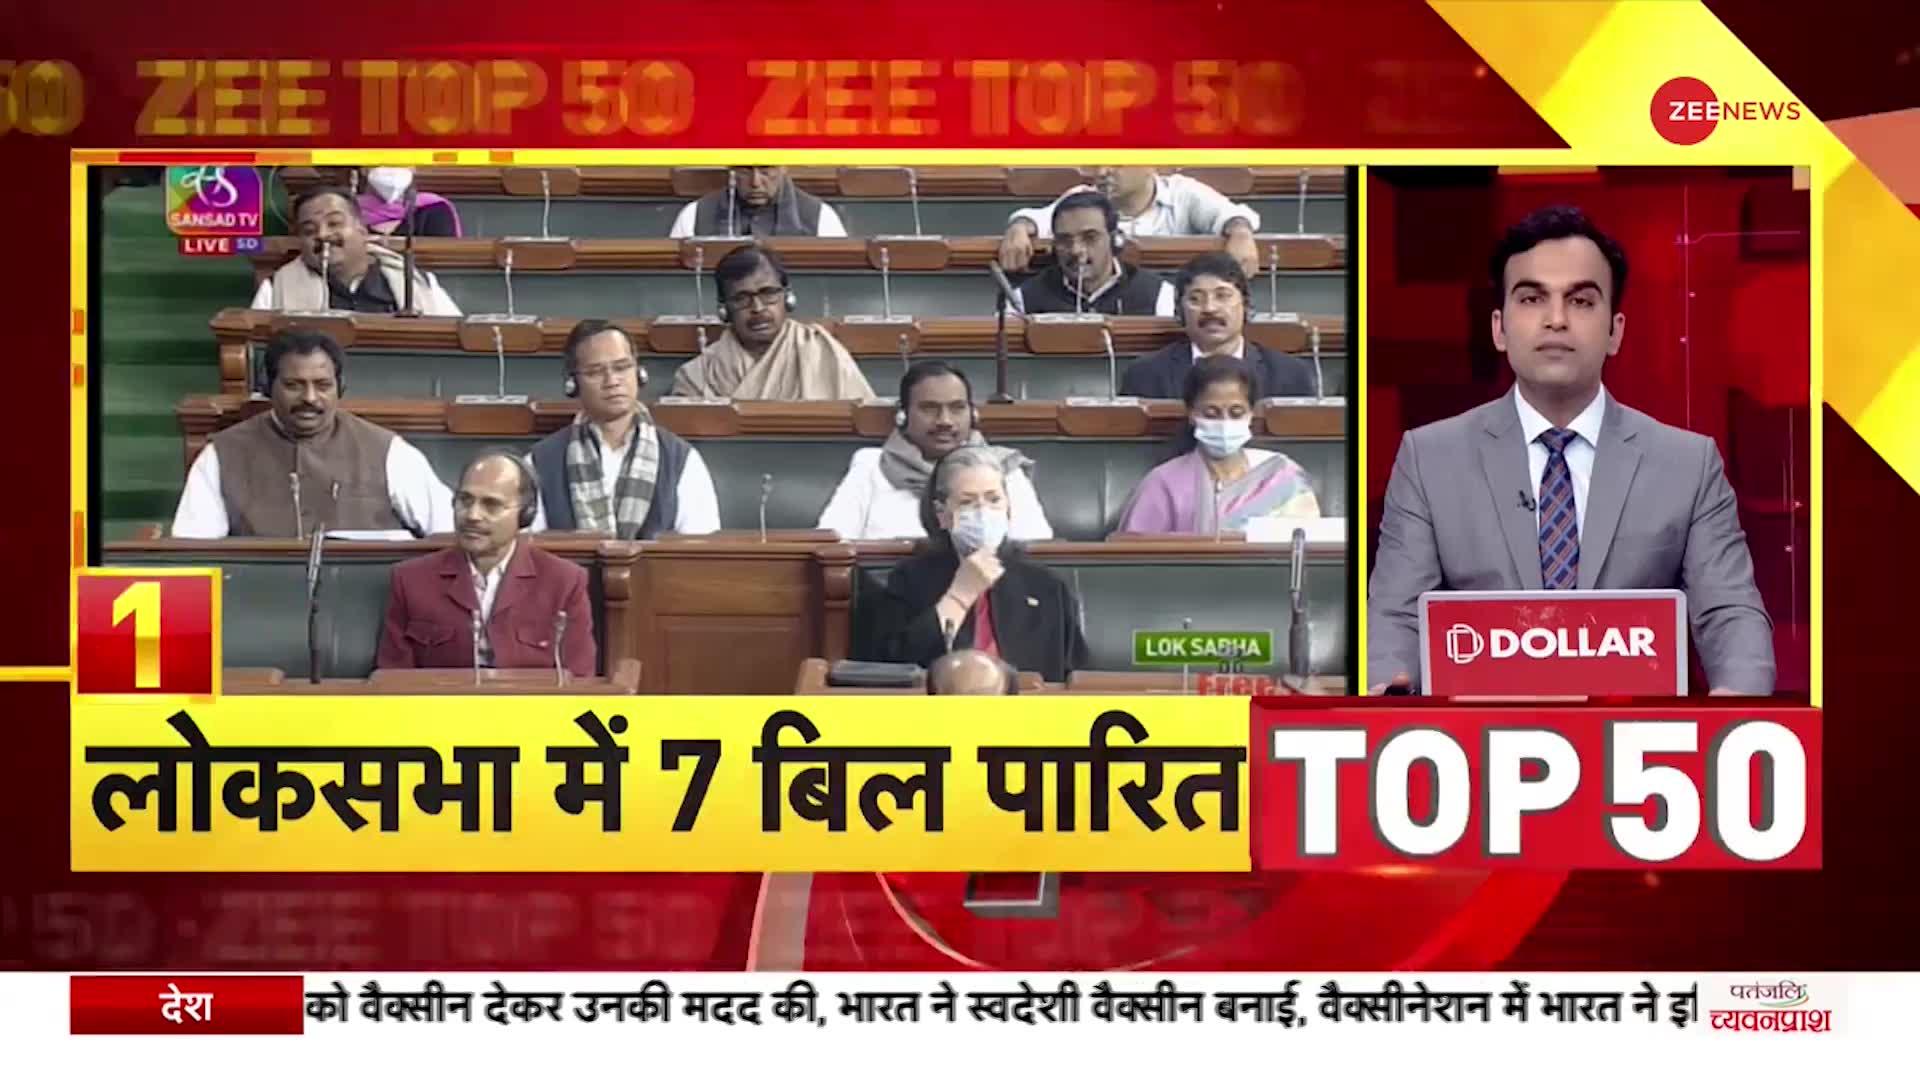 ZEE TOP 50: तय समय से पहले खत्म हुआ संसद का शीतकालीन सत्र, Lok Sabha में 7 बिल पारित |Winter Session